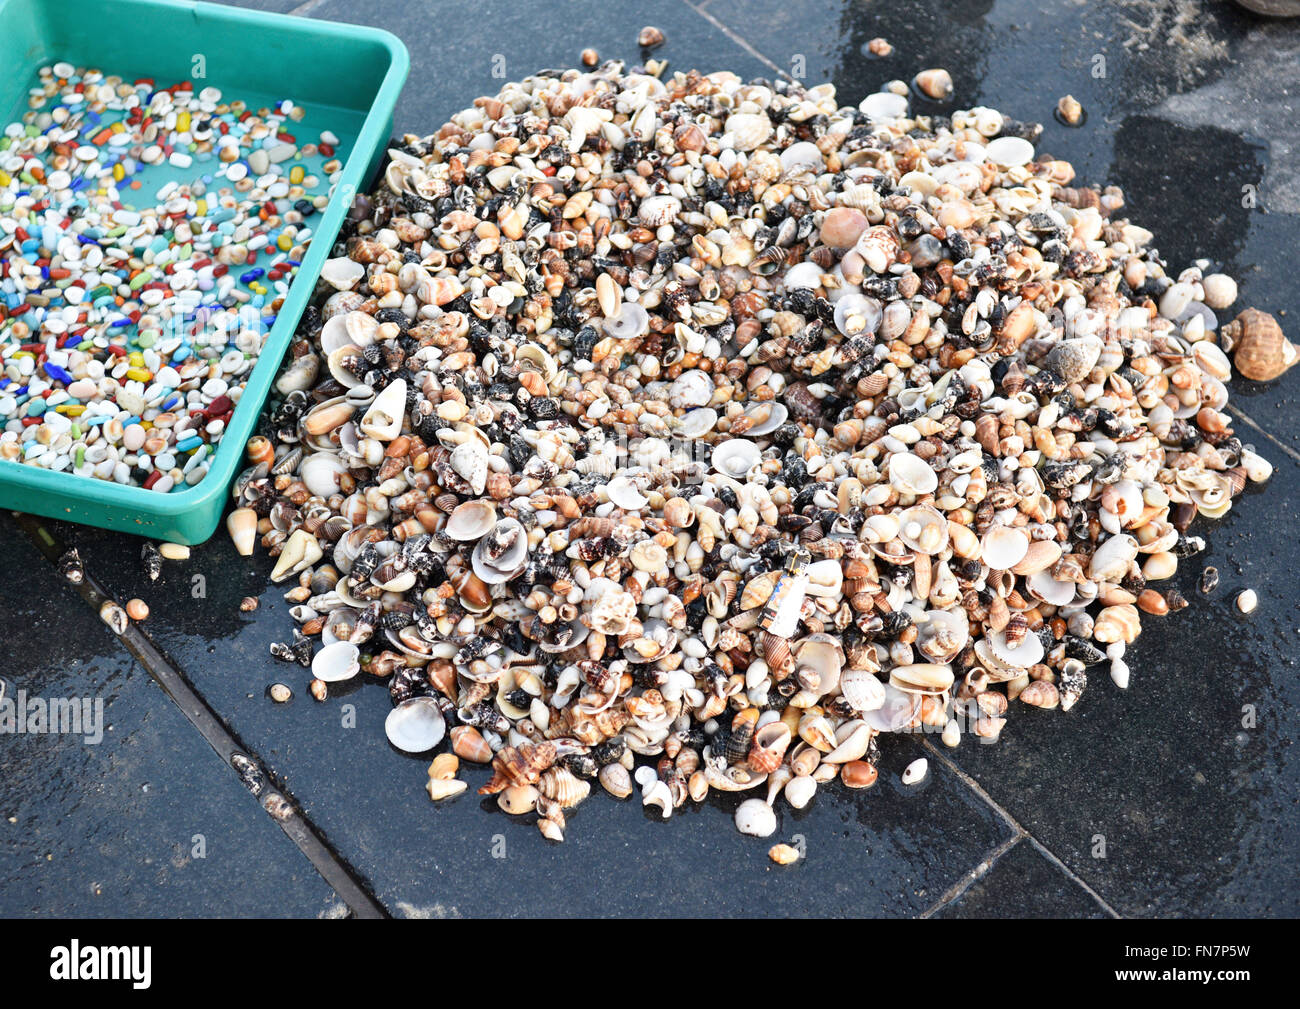 Affichage de variété de coquillages, pierres de couleur, de pierres précieuses et d'or provenant de fonds marins et les plages. Banque D'Images